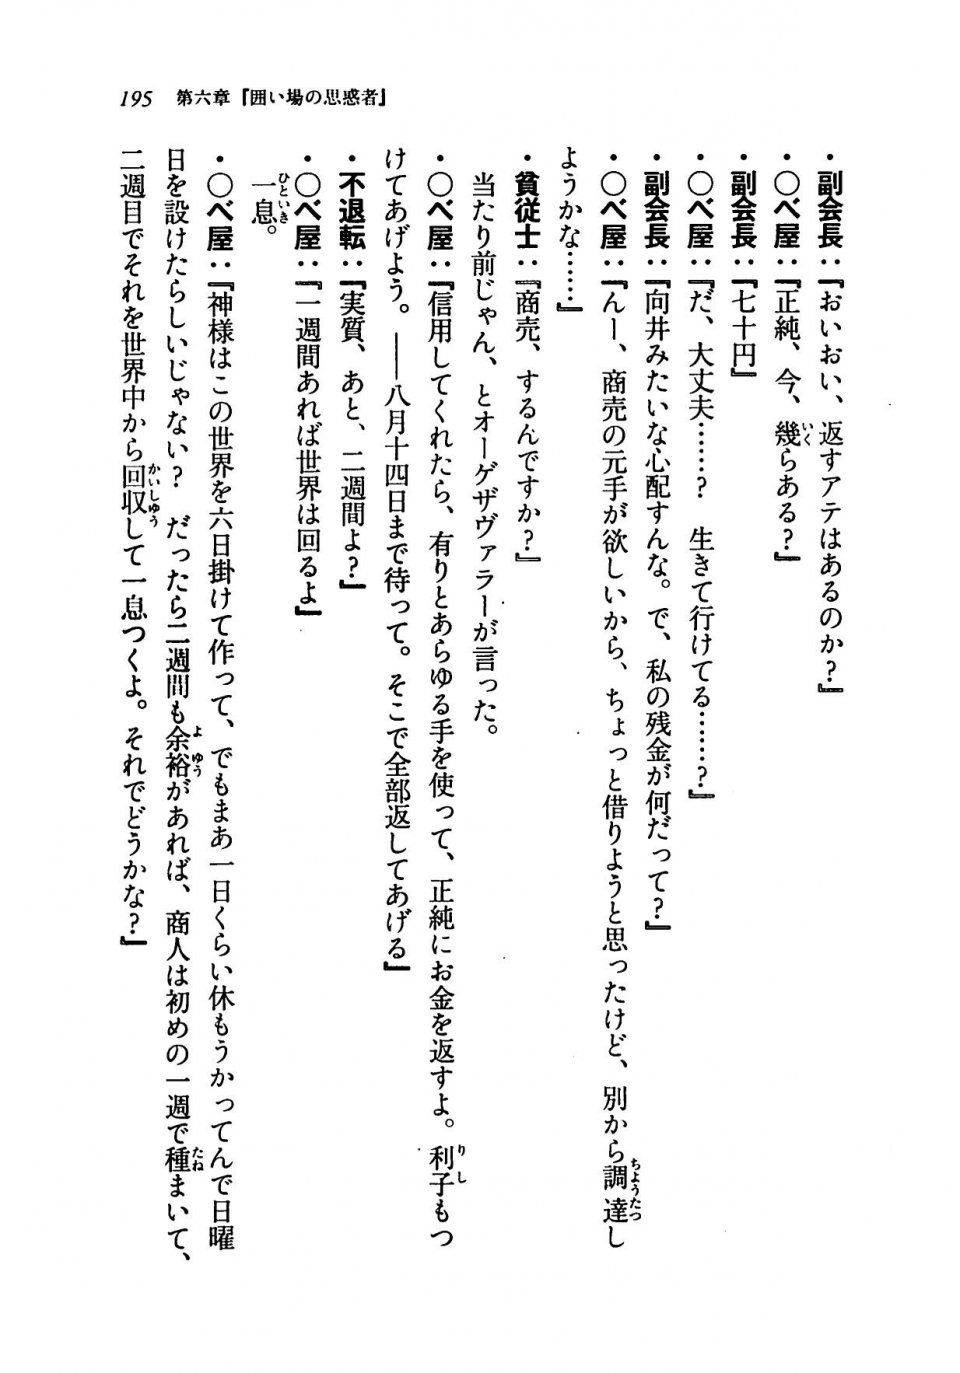 Kyoukai Senjou no Horizon LN Vol 19(8A) - Photo #195